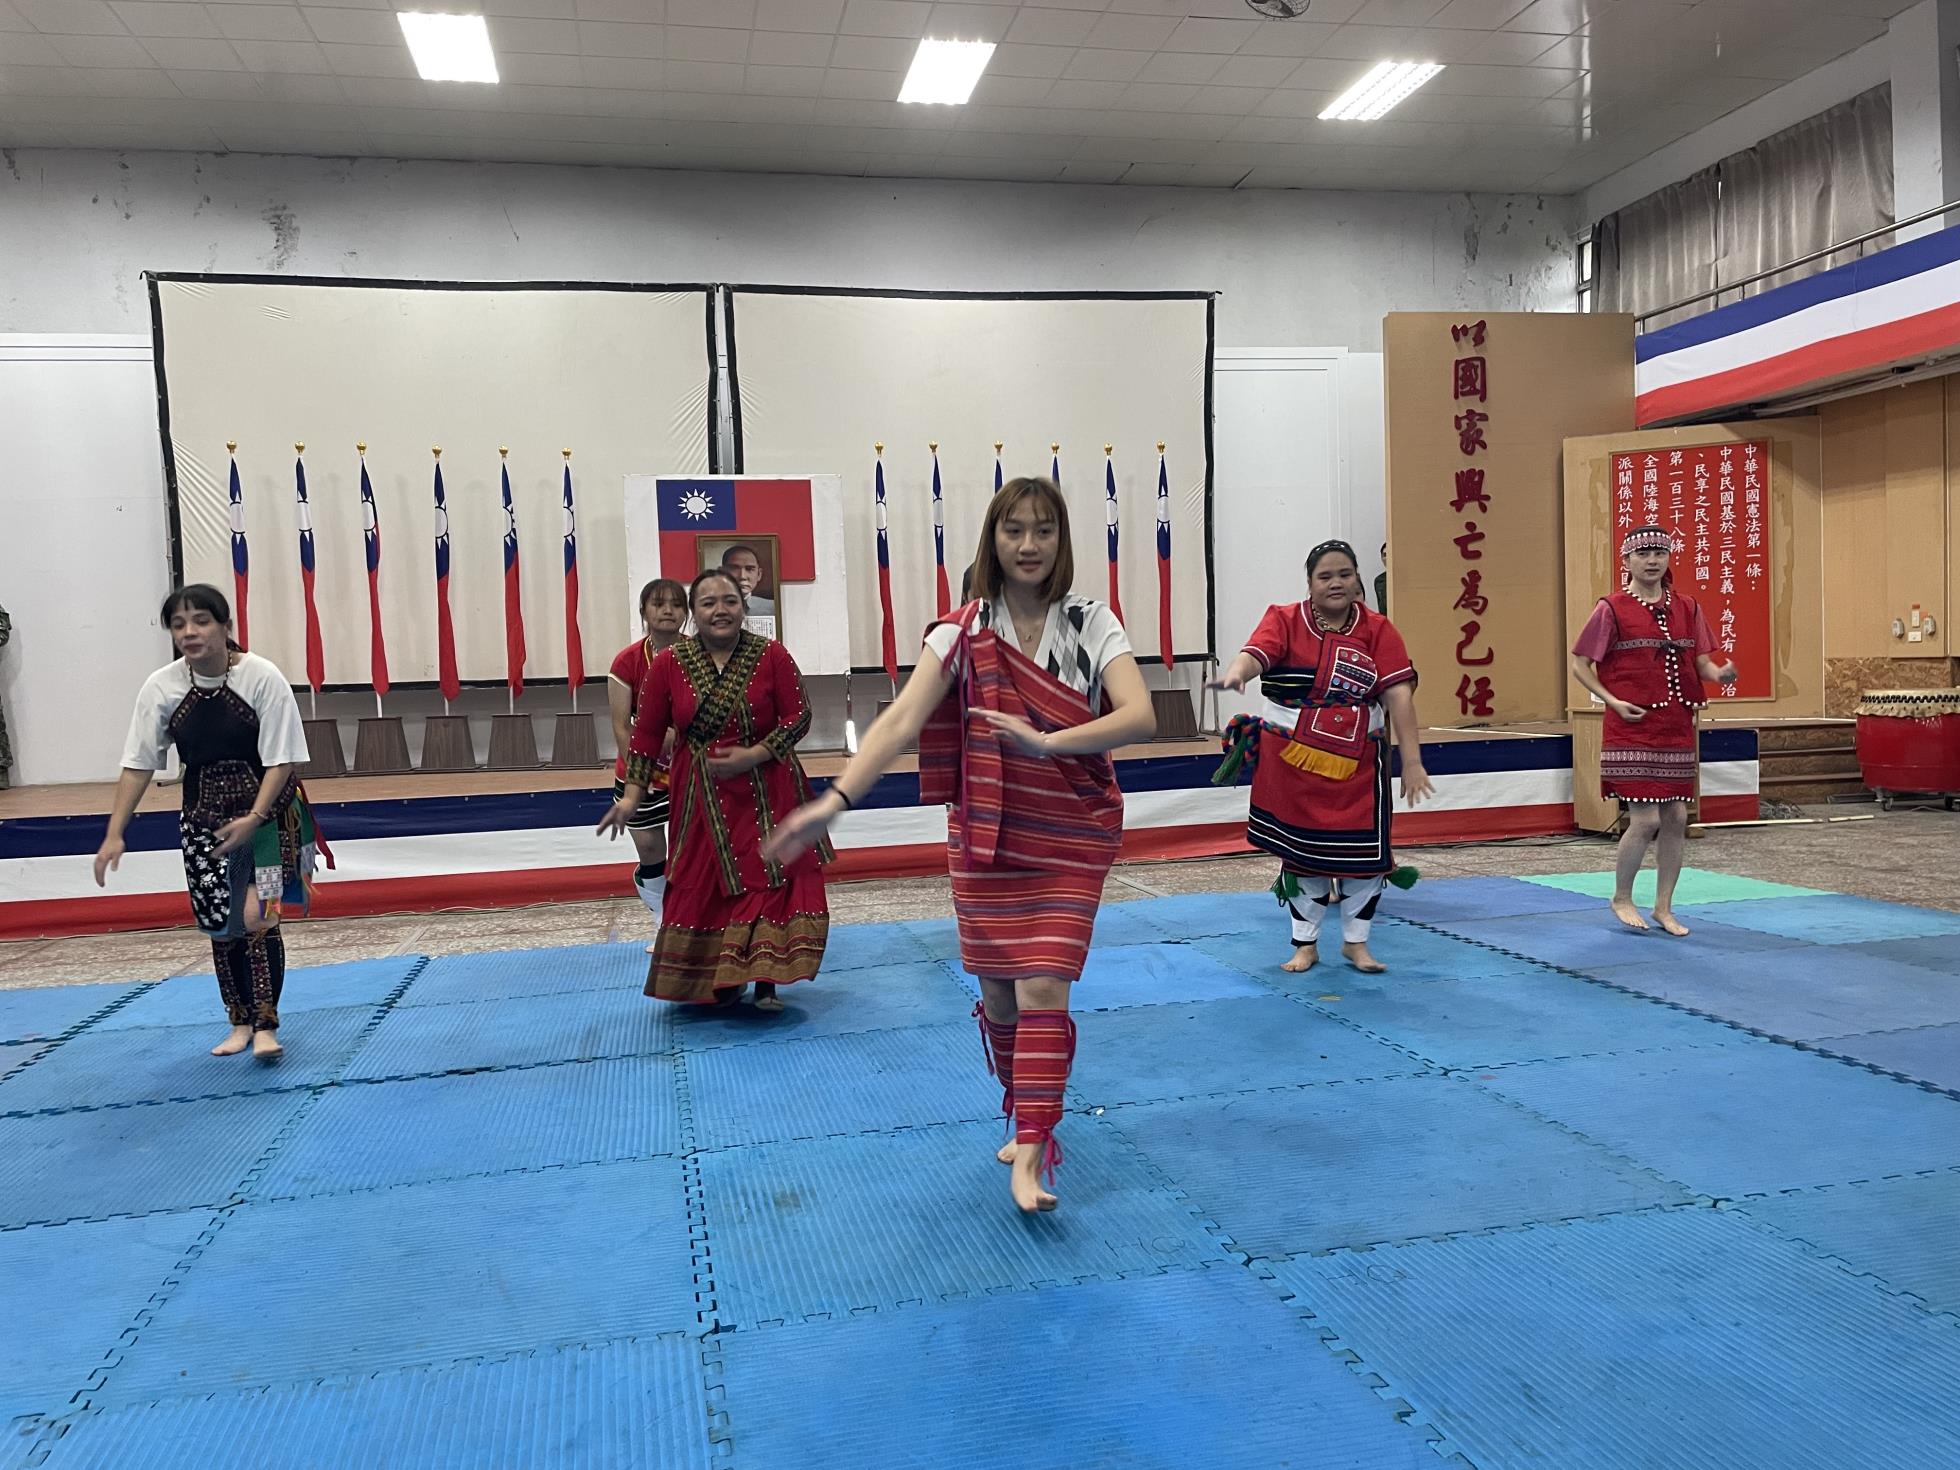 002.本校「原民社」同學舞蹈表演展現歷史傳統與民族文化